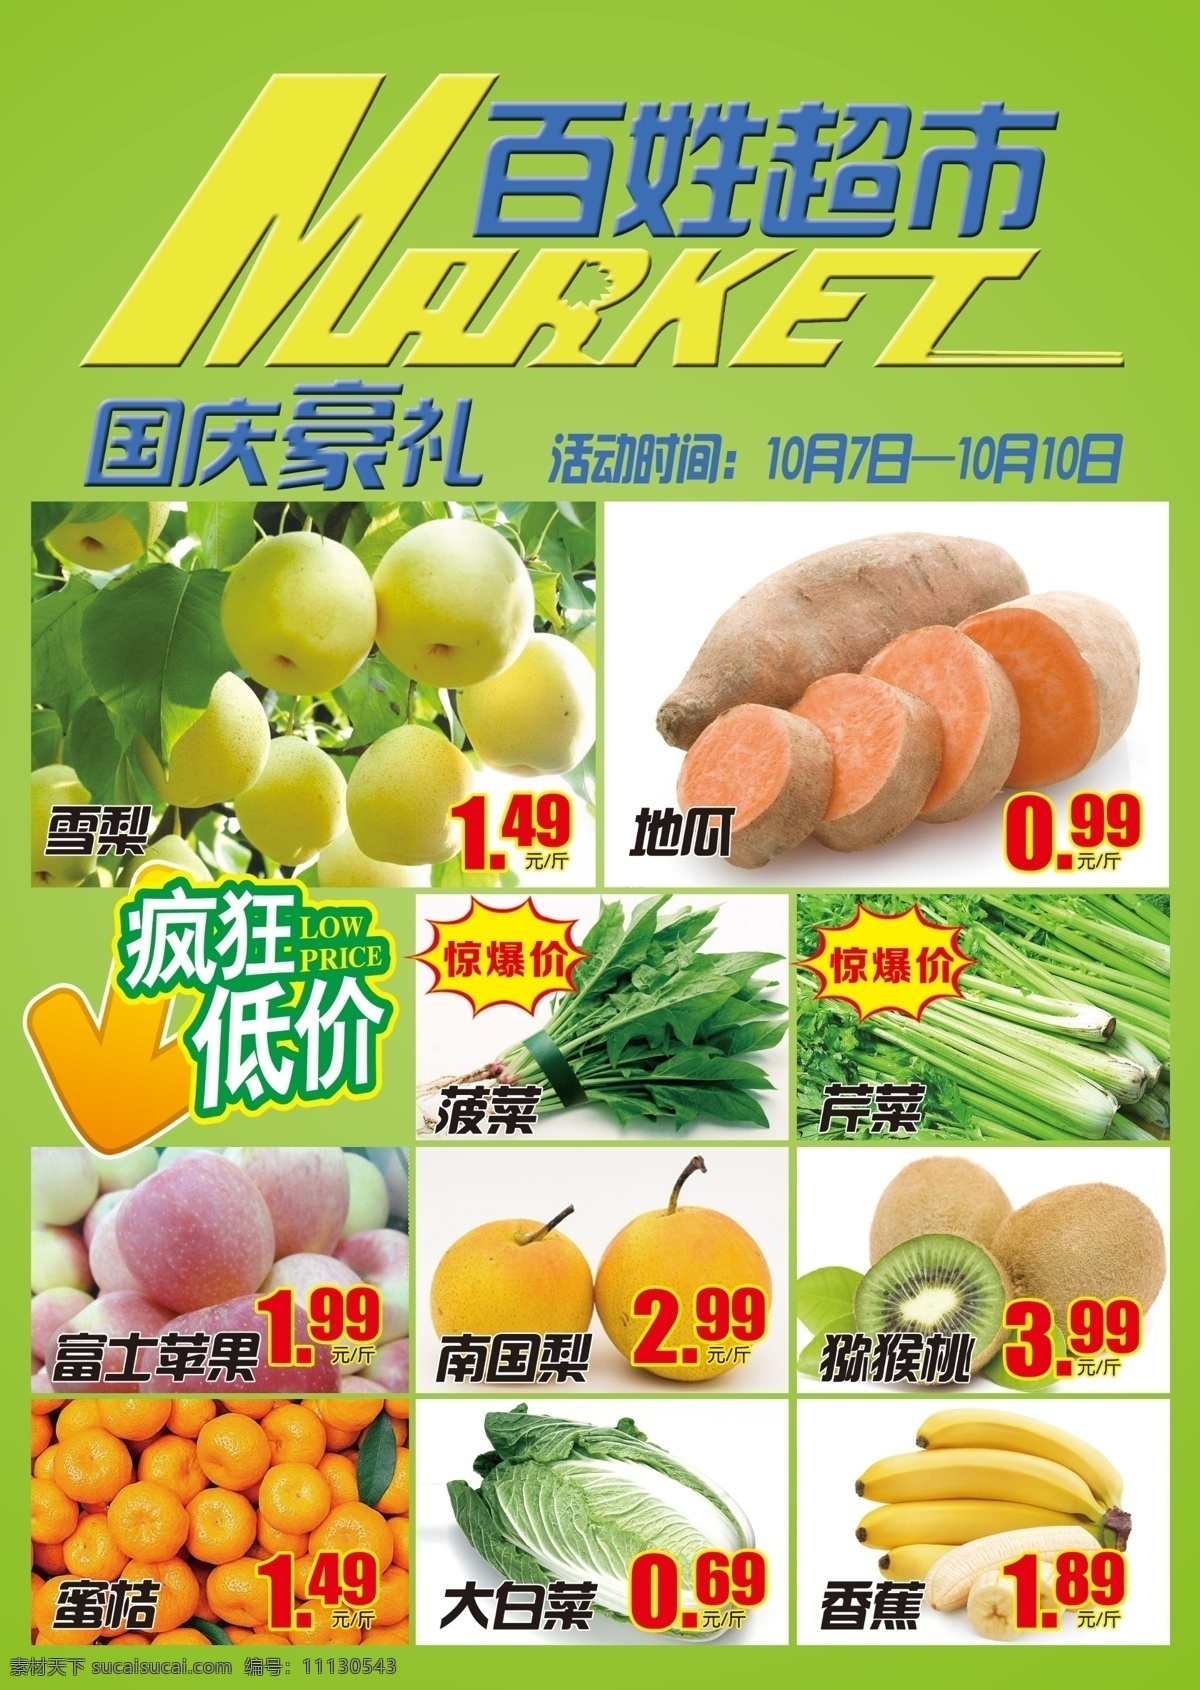 超市海报 超市dm单 超市水果海报 疯狂低价 绿色